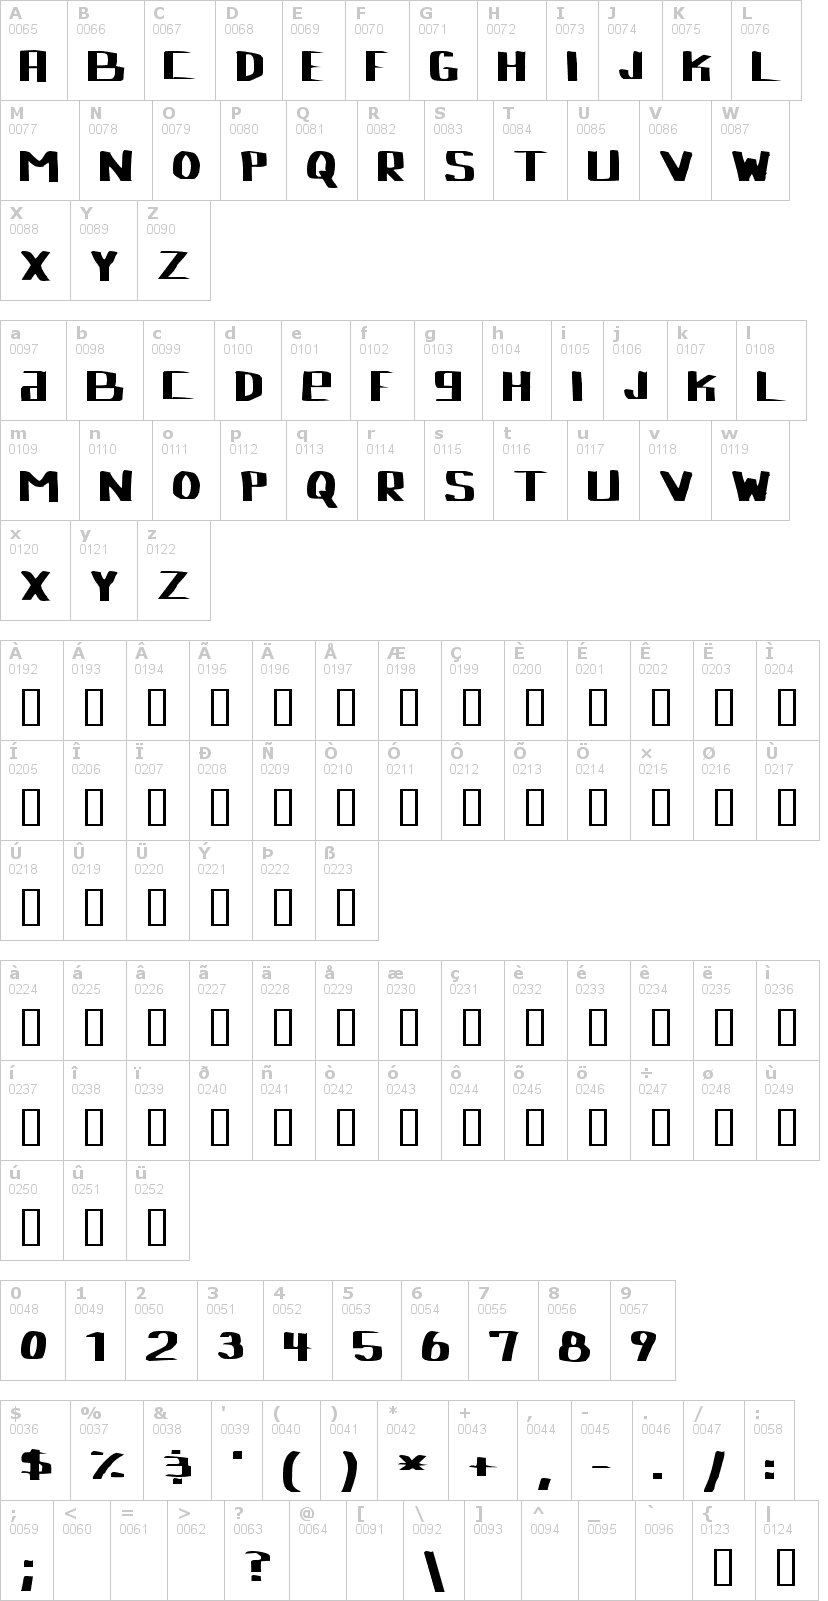 Lettere dell'alfabeto del font lebowski con le quali è possibile realizzare adesivi prespaziati